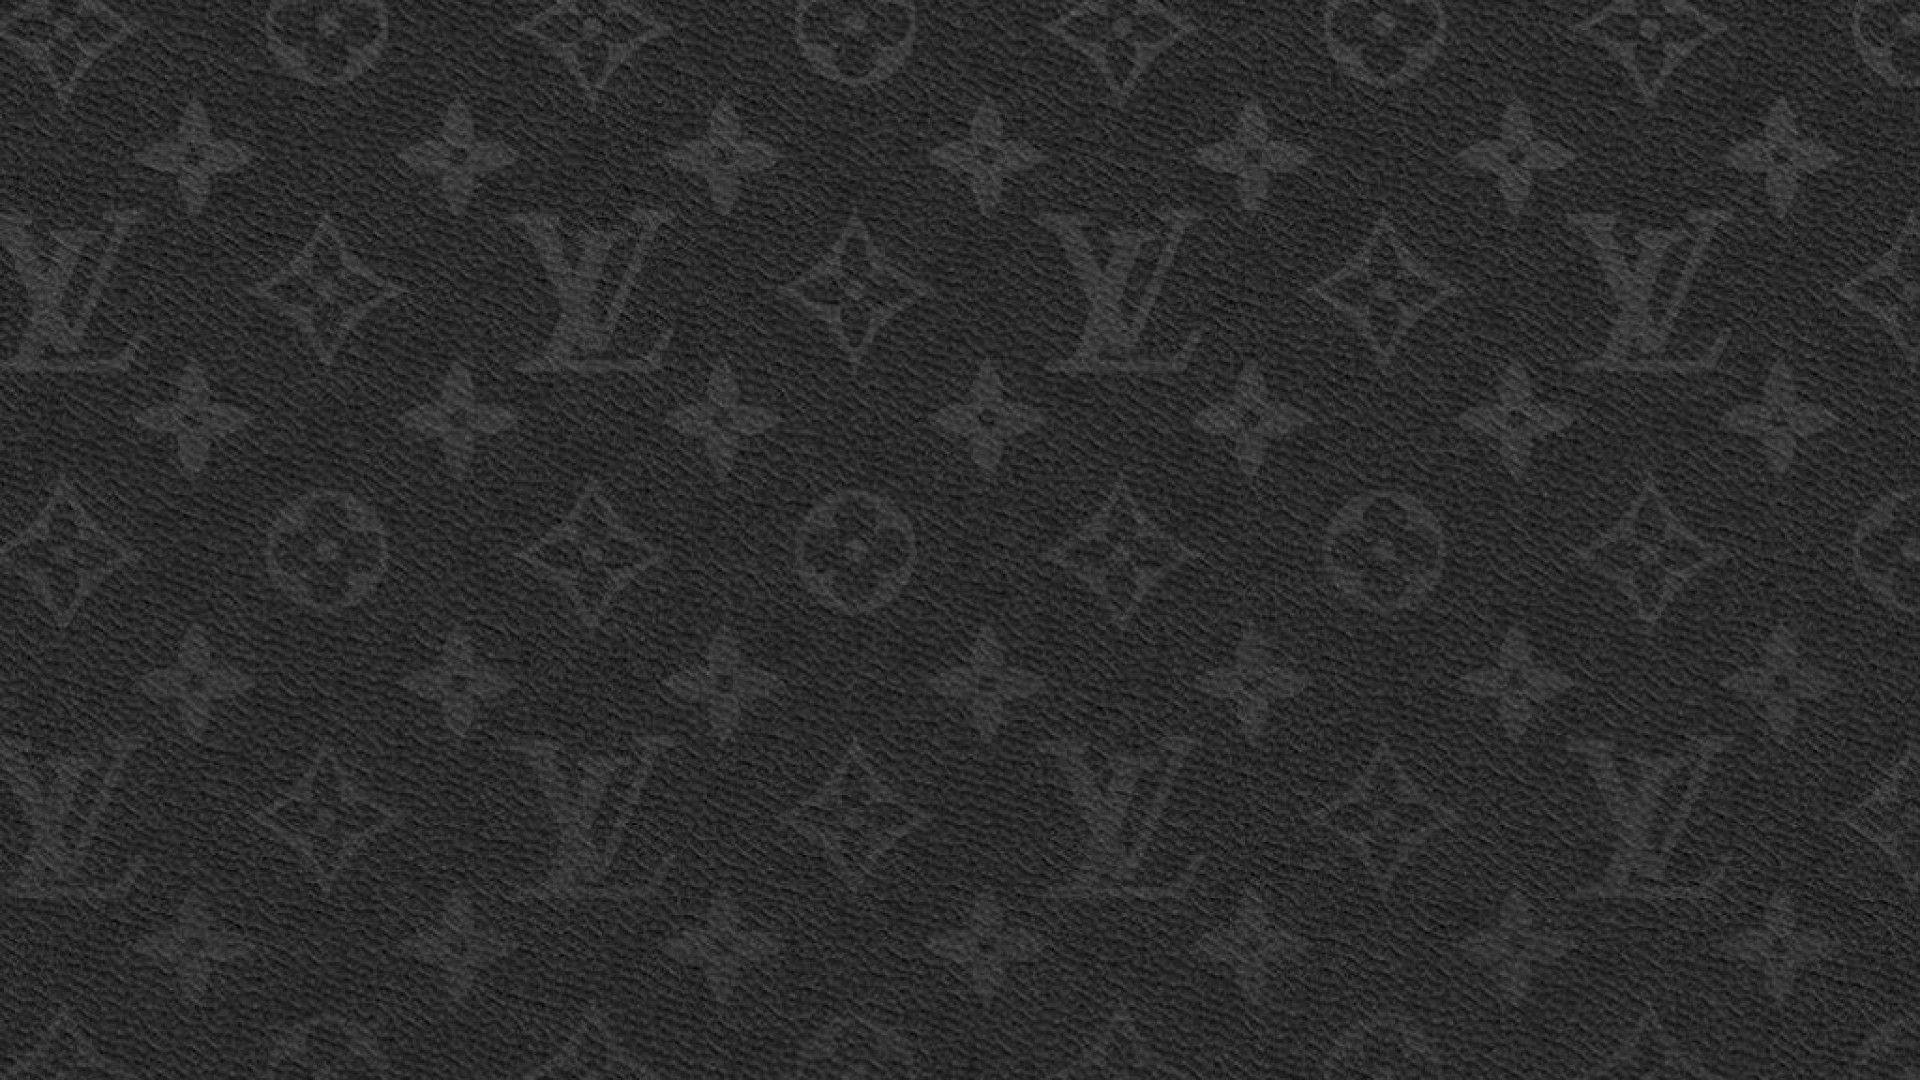 1920x1080 Hình nền máy tính Louis Vuitton đen và xám